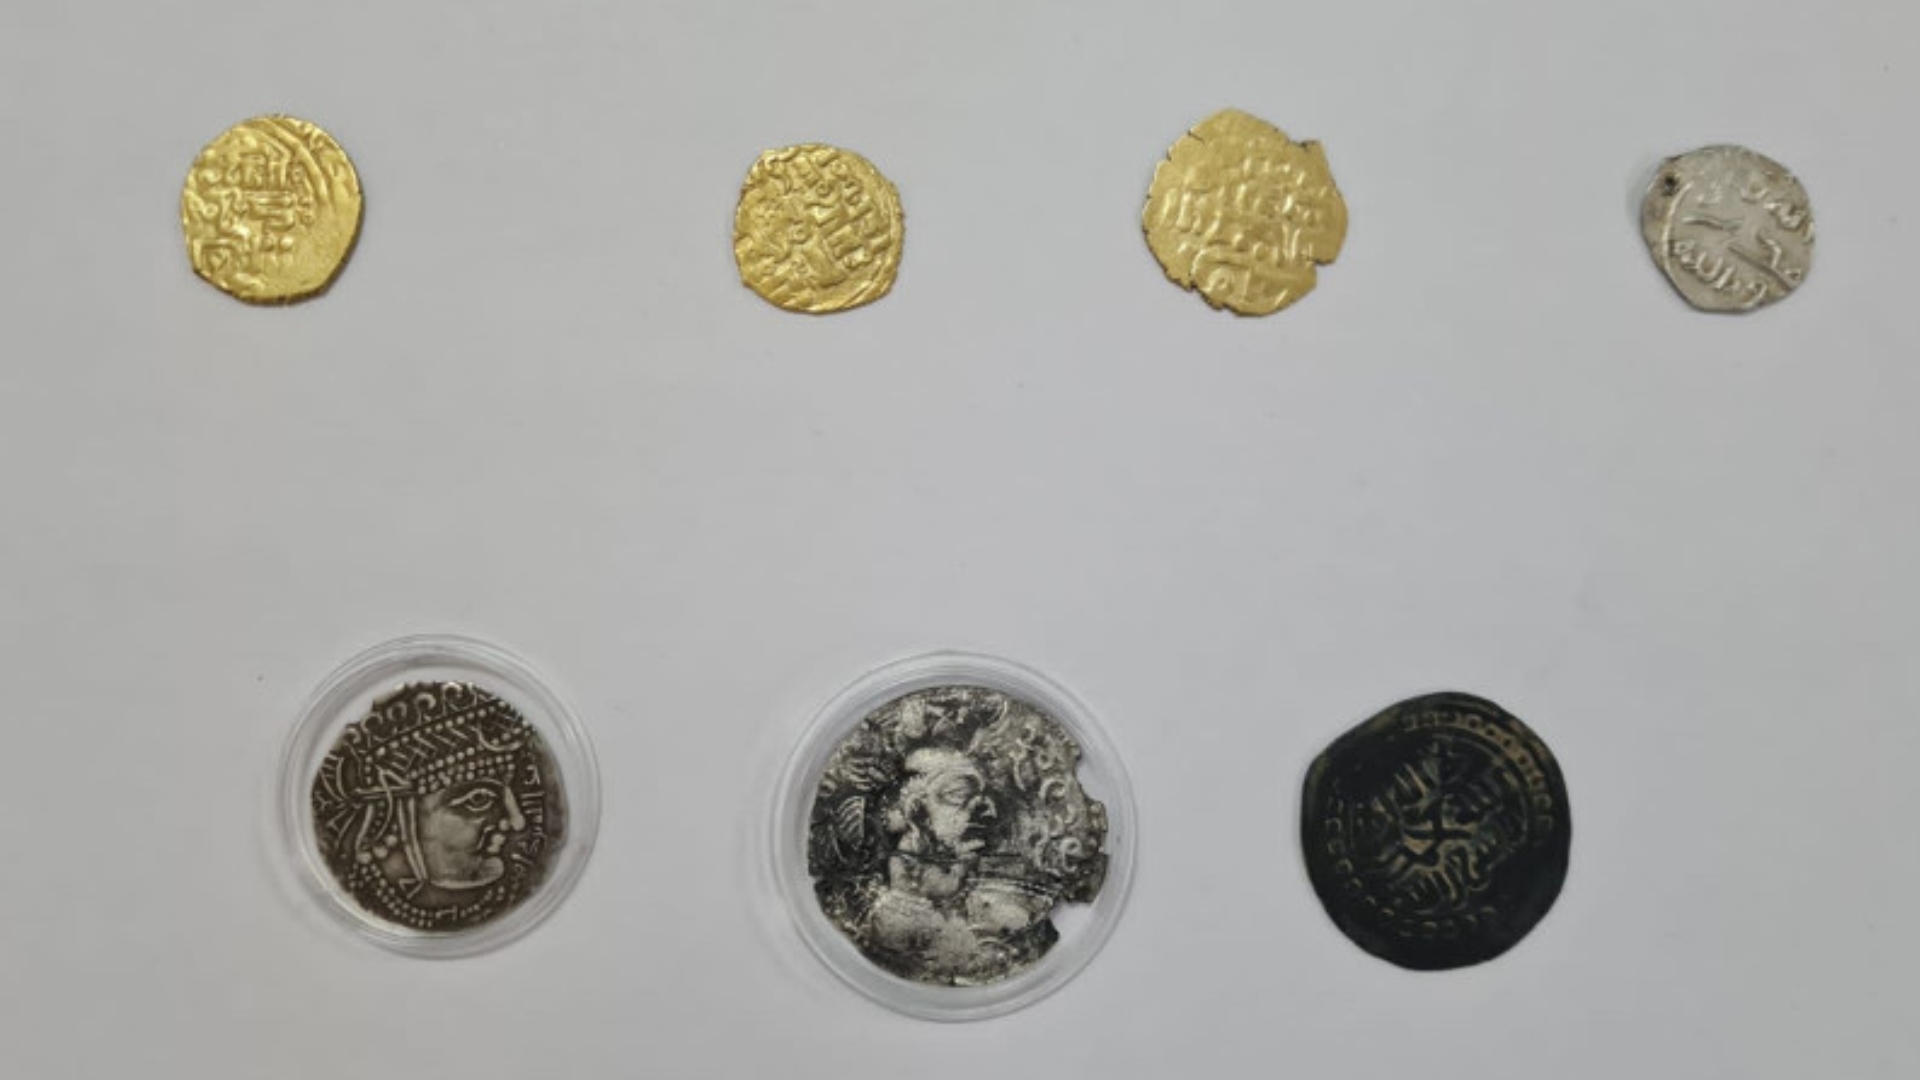 V-XIII ғасырға жататын монеталарды Қазақстаннан заңсыз алып өтпек болған